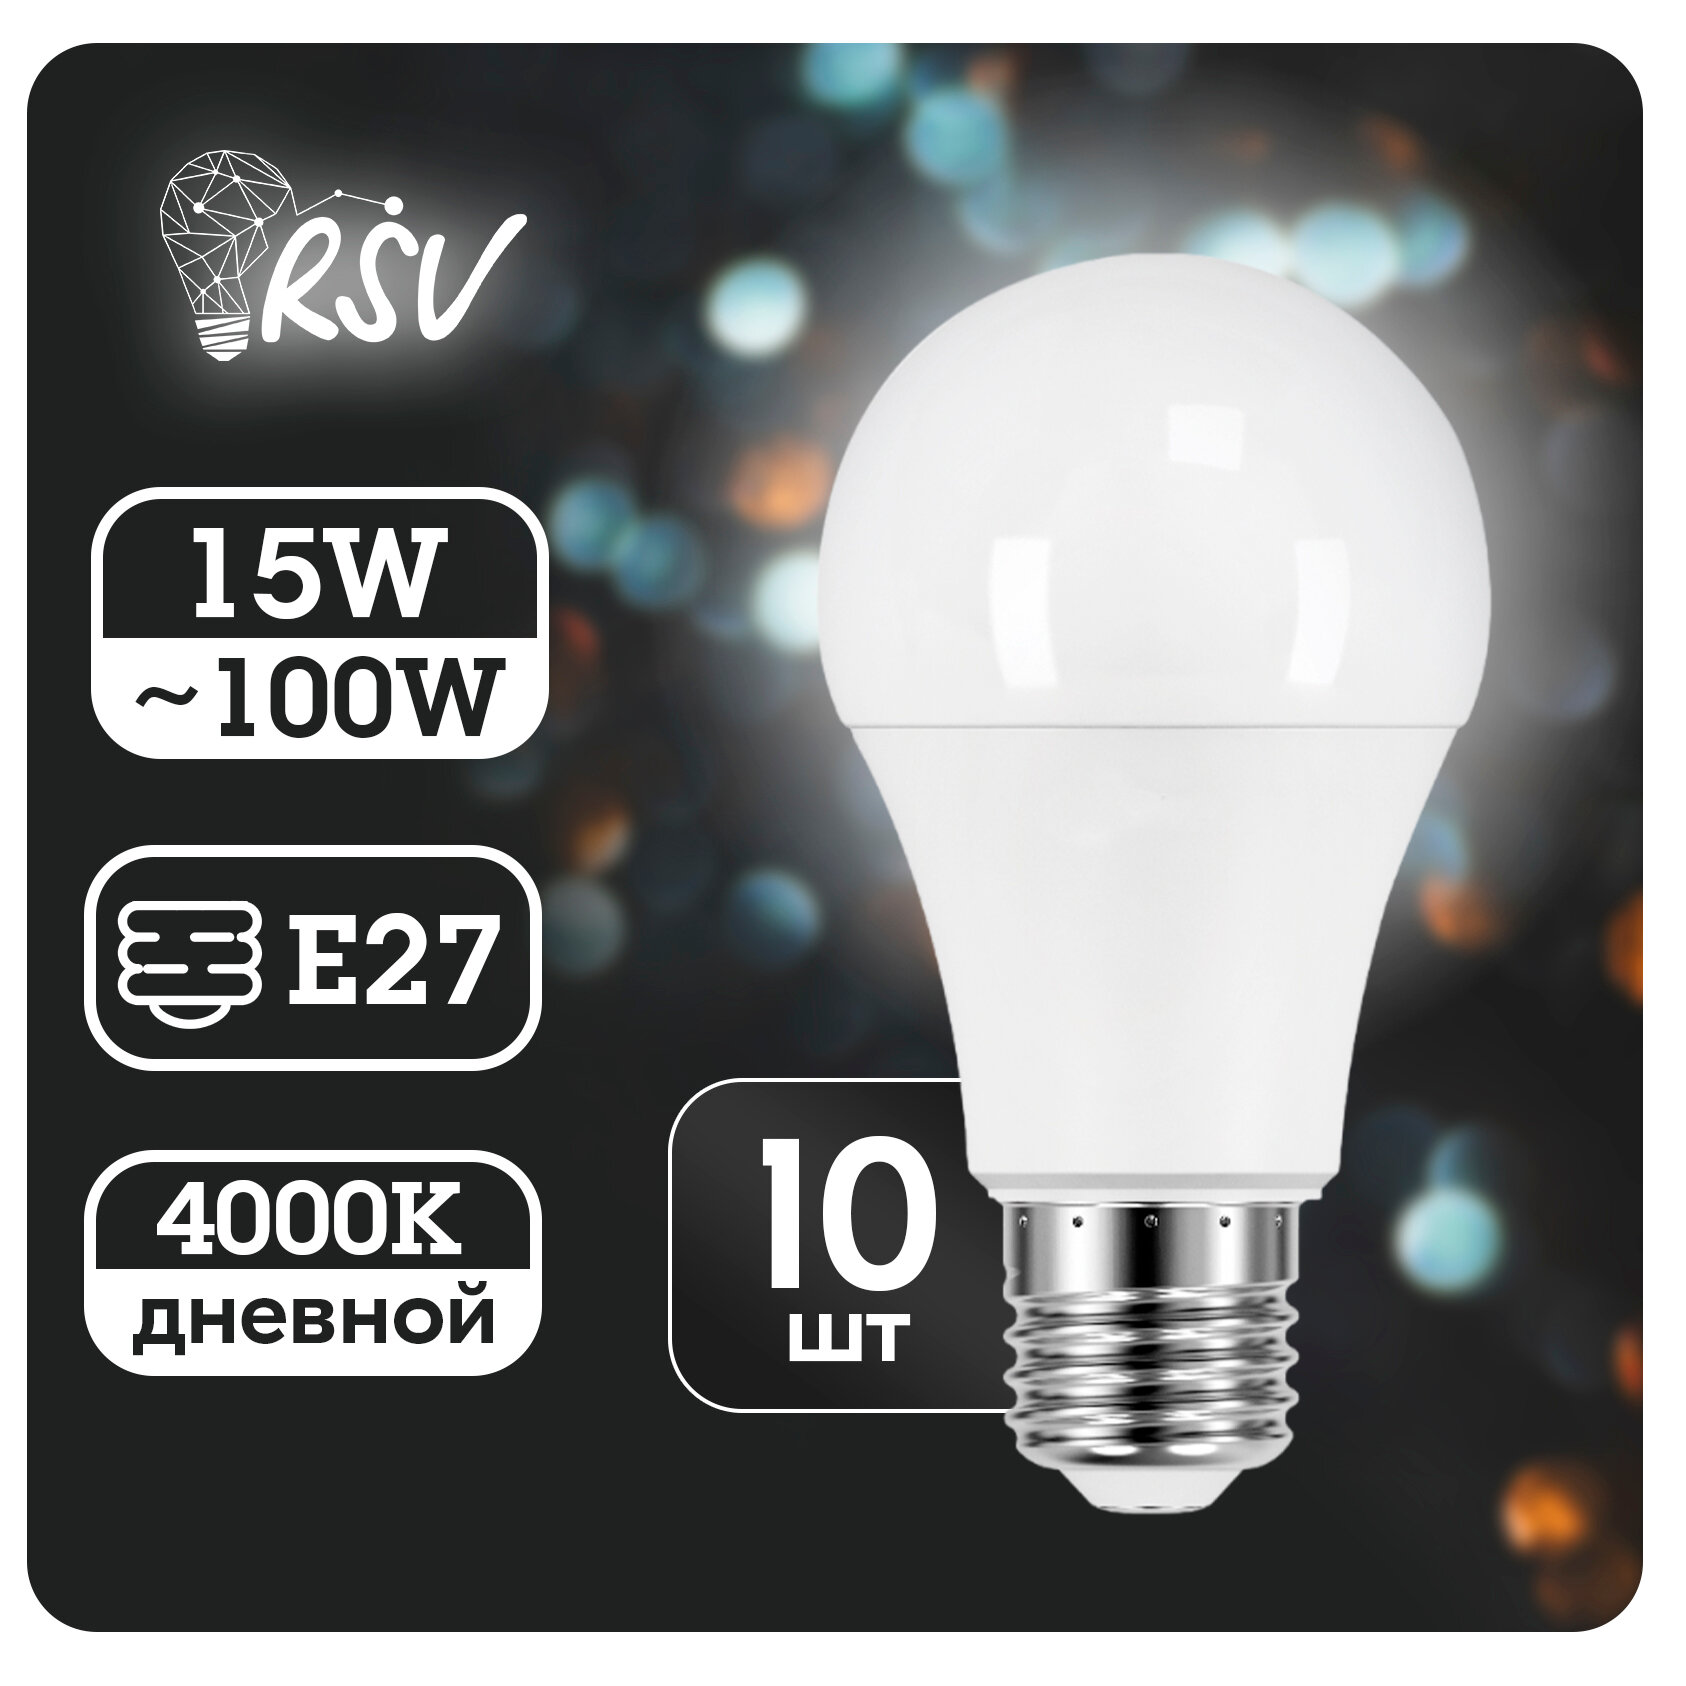 Лампа светодиодная RSV Е27 15 Вт (150 Вт) 4000K, дневной свет, набор 10 шт